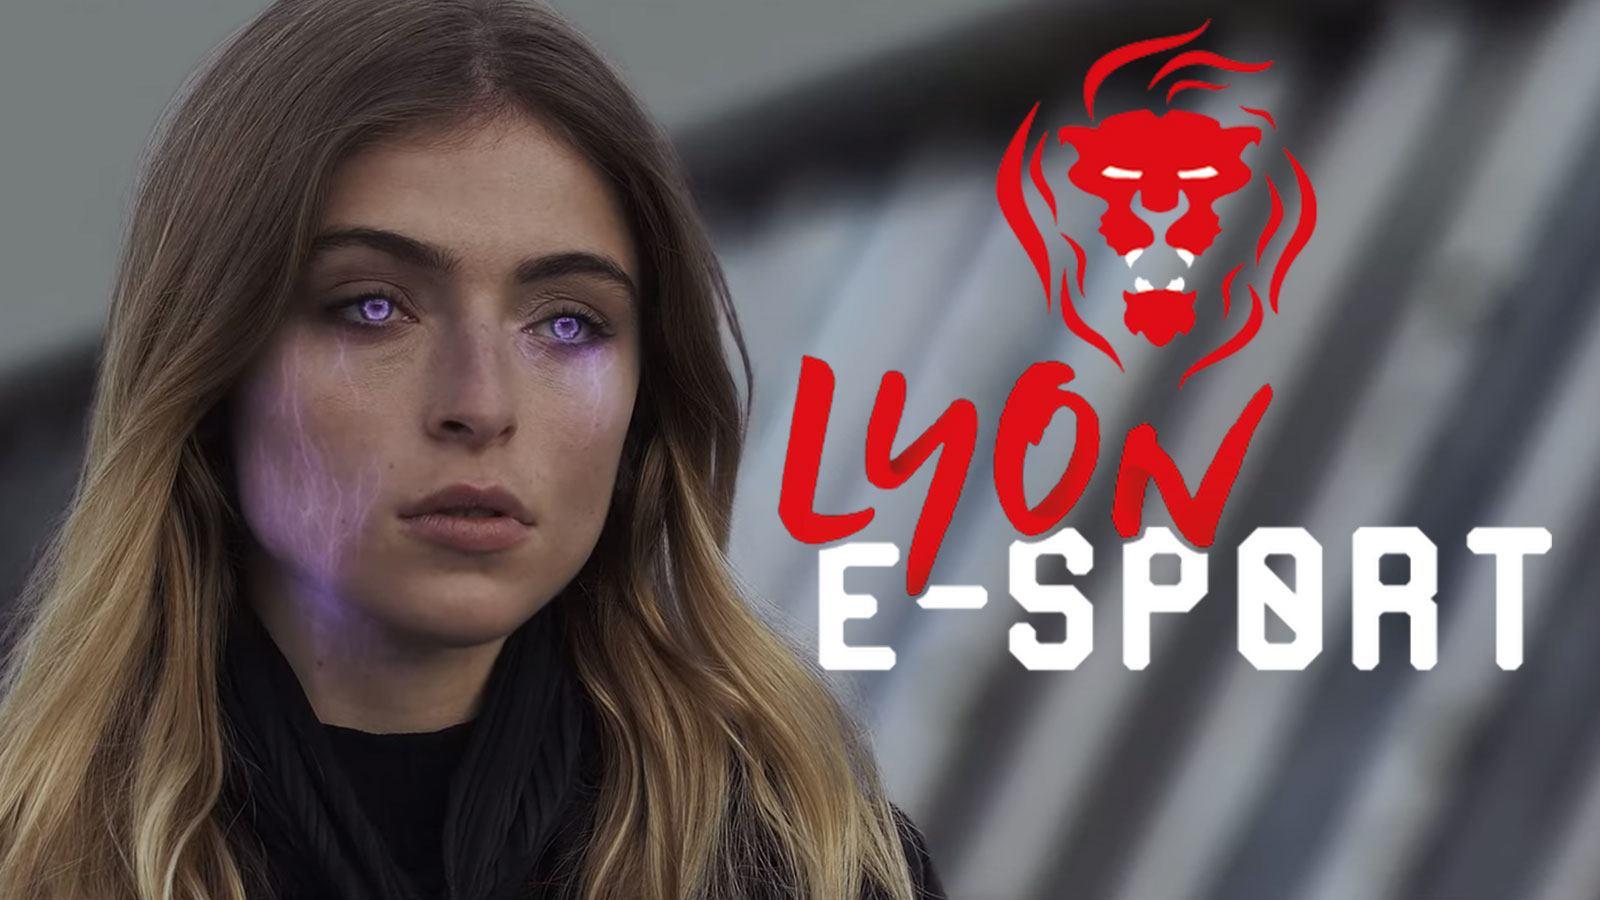 Extrait du trailer de la LES 2020 et logo de la Lyon e-Sport